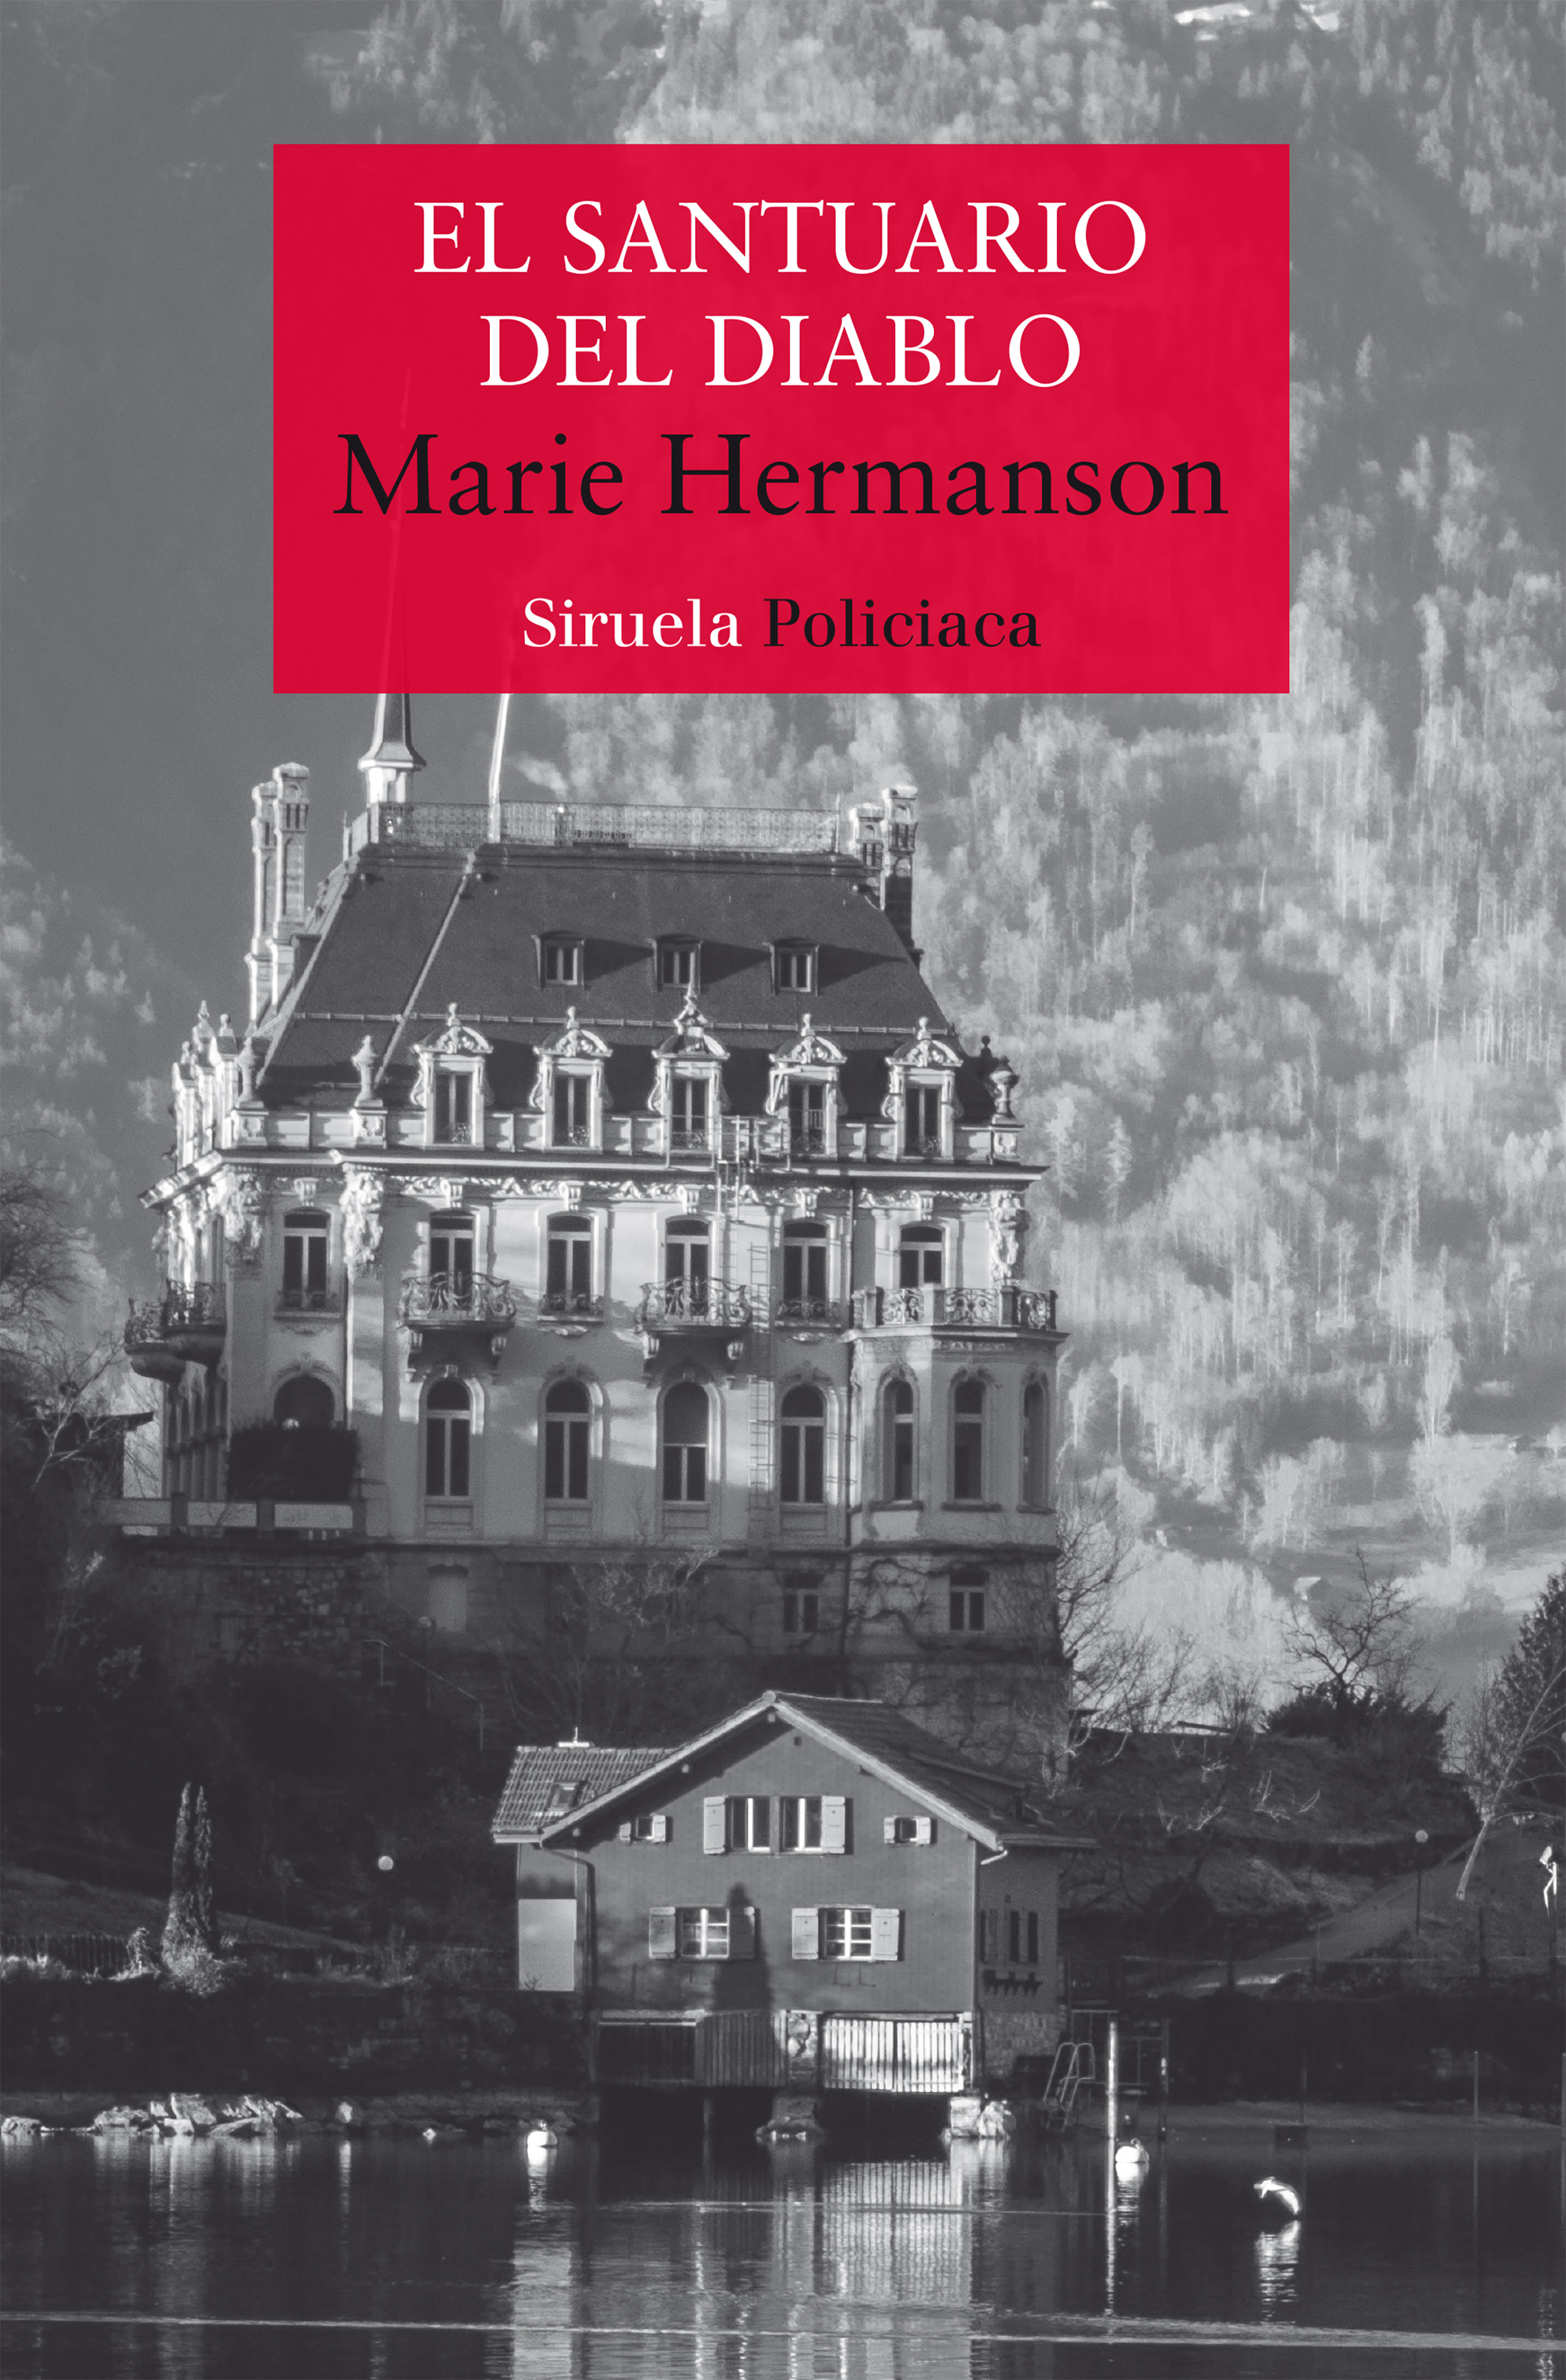 El santuario del diablo, Marie Hermanson